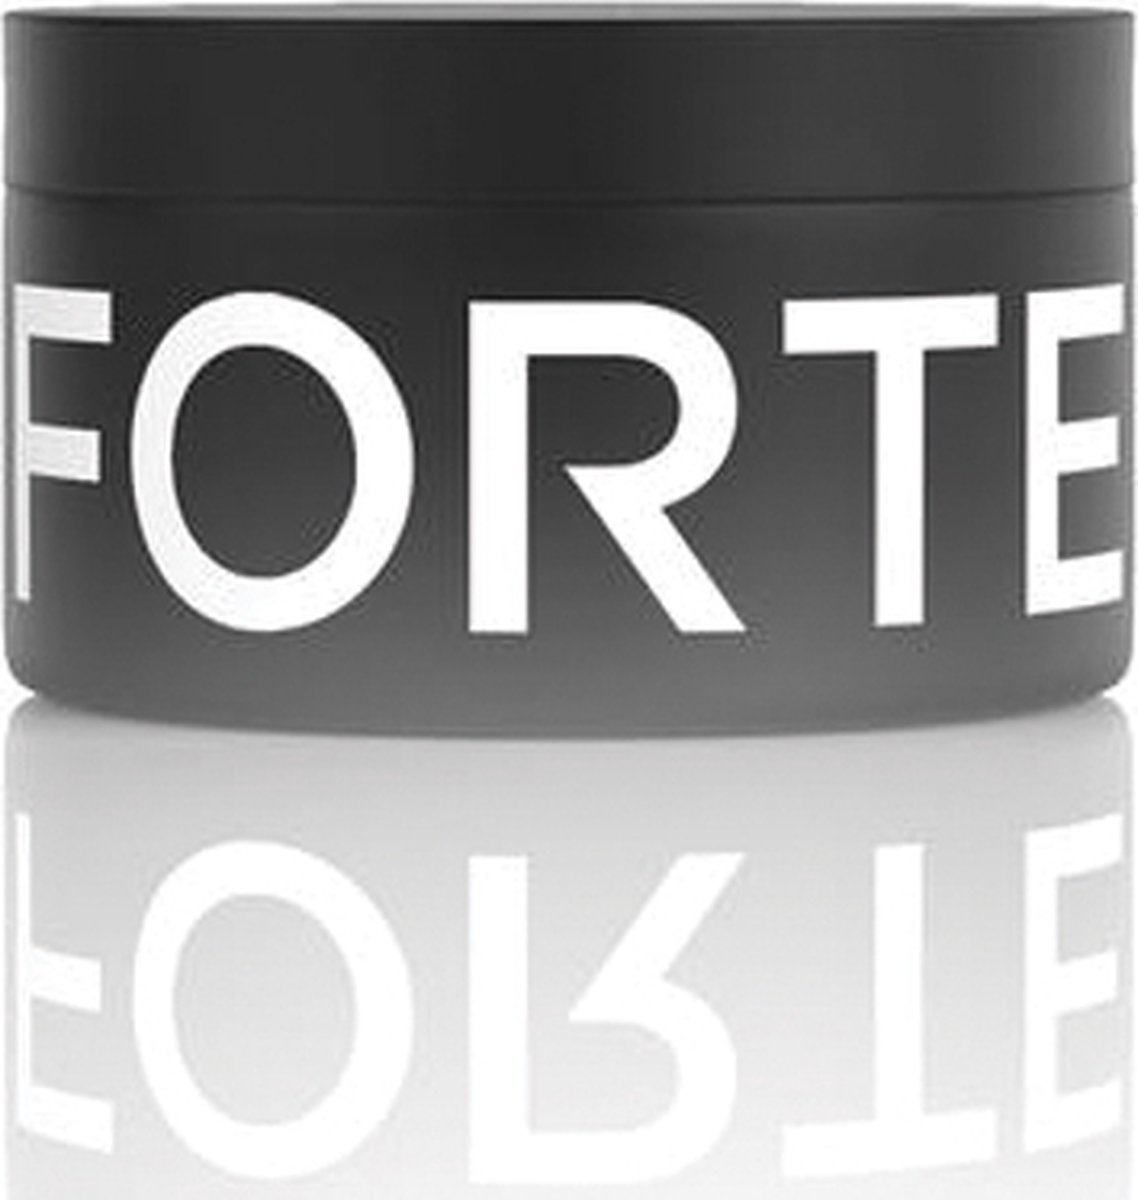 Forte Series Pomade 85 gr.